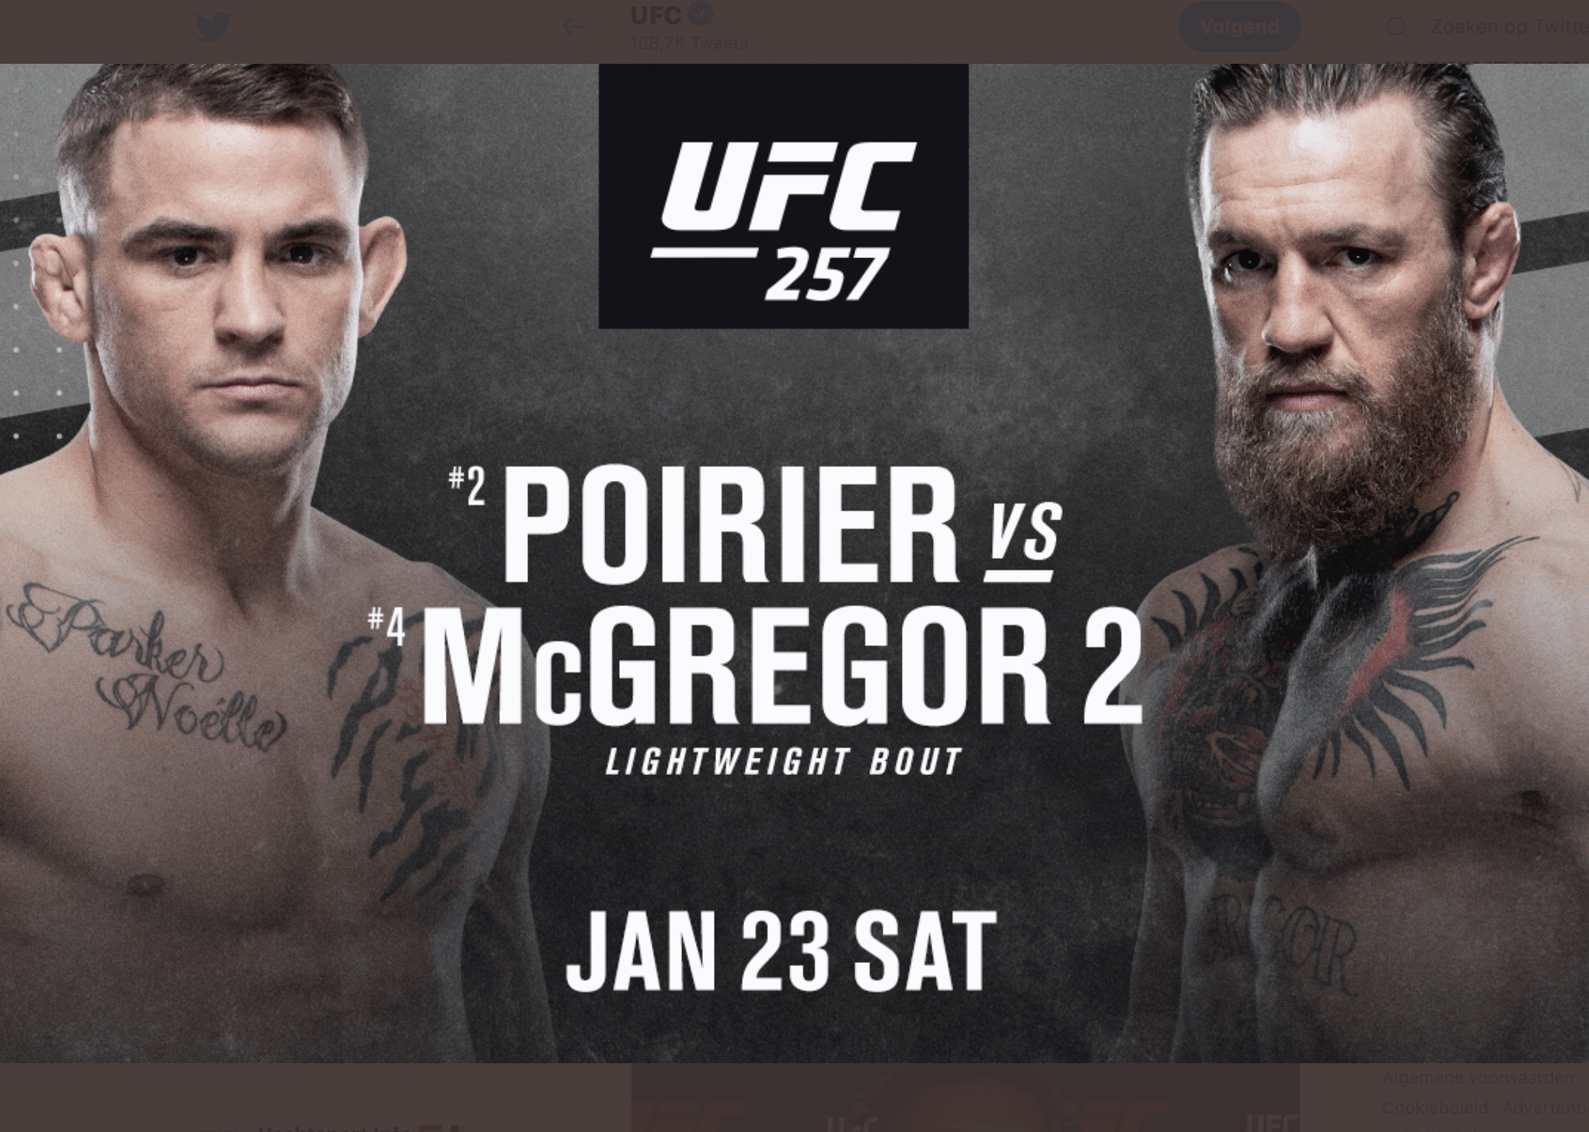 UFC kondigt Dustin Poirier vs Conor McGregor officieel aan